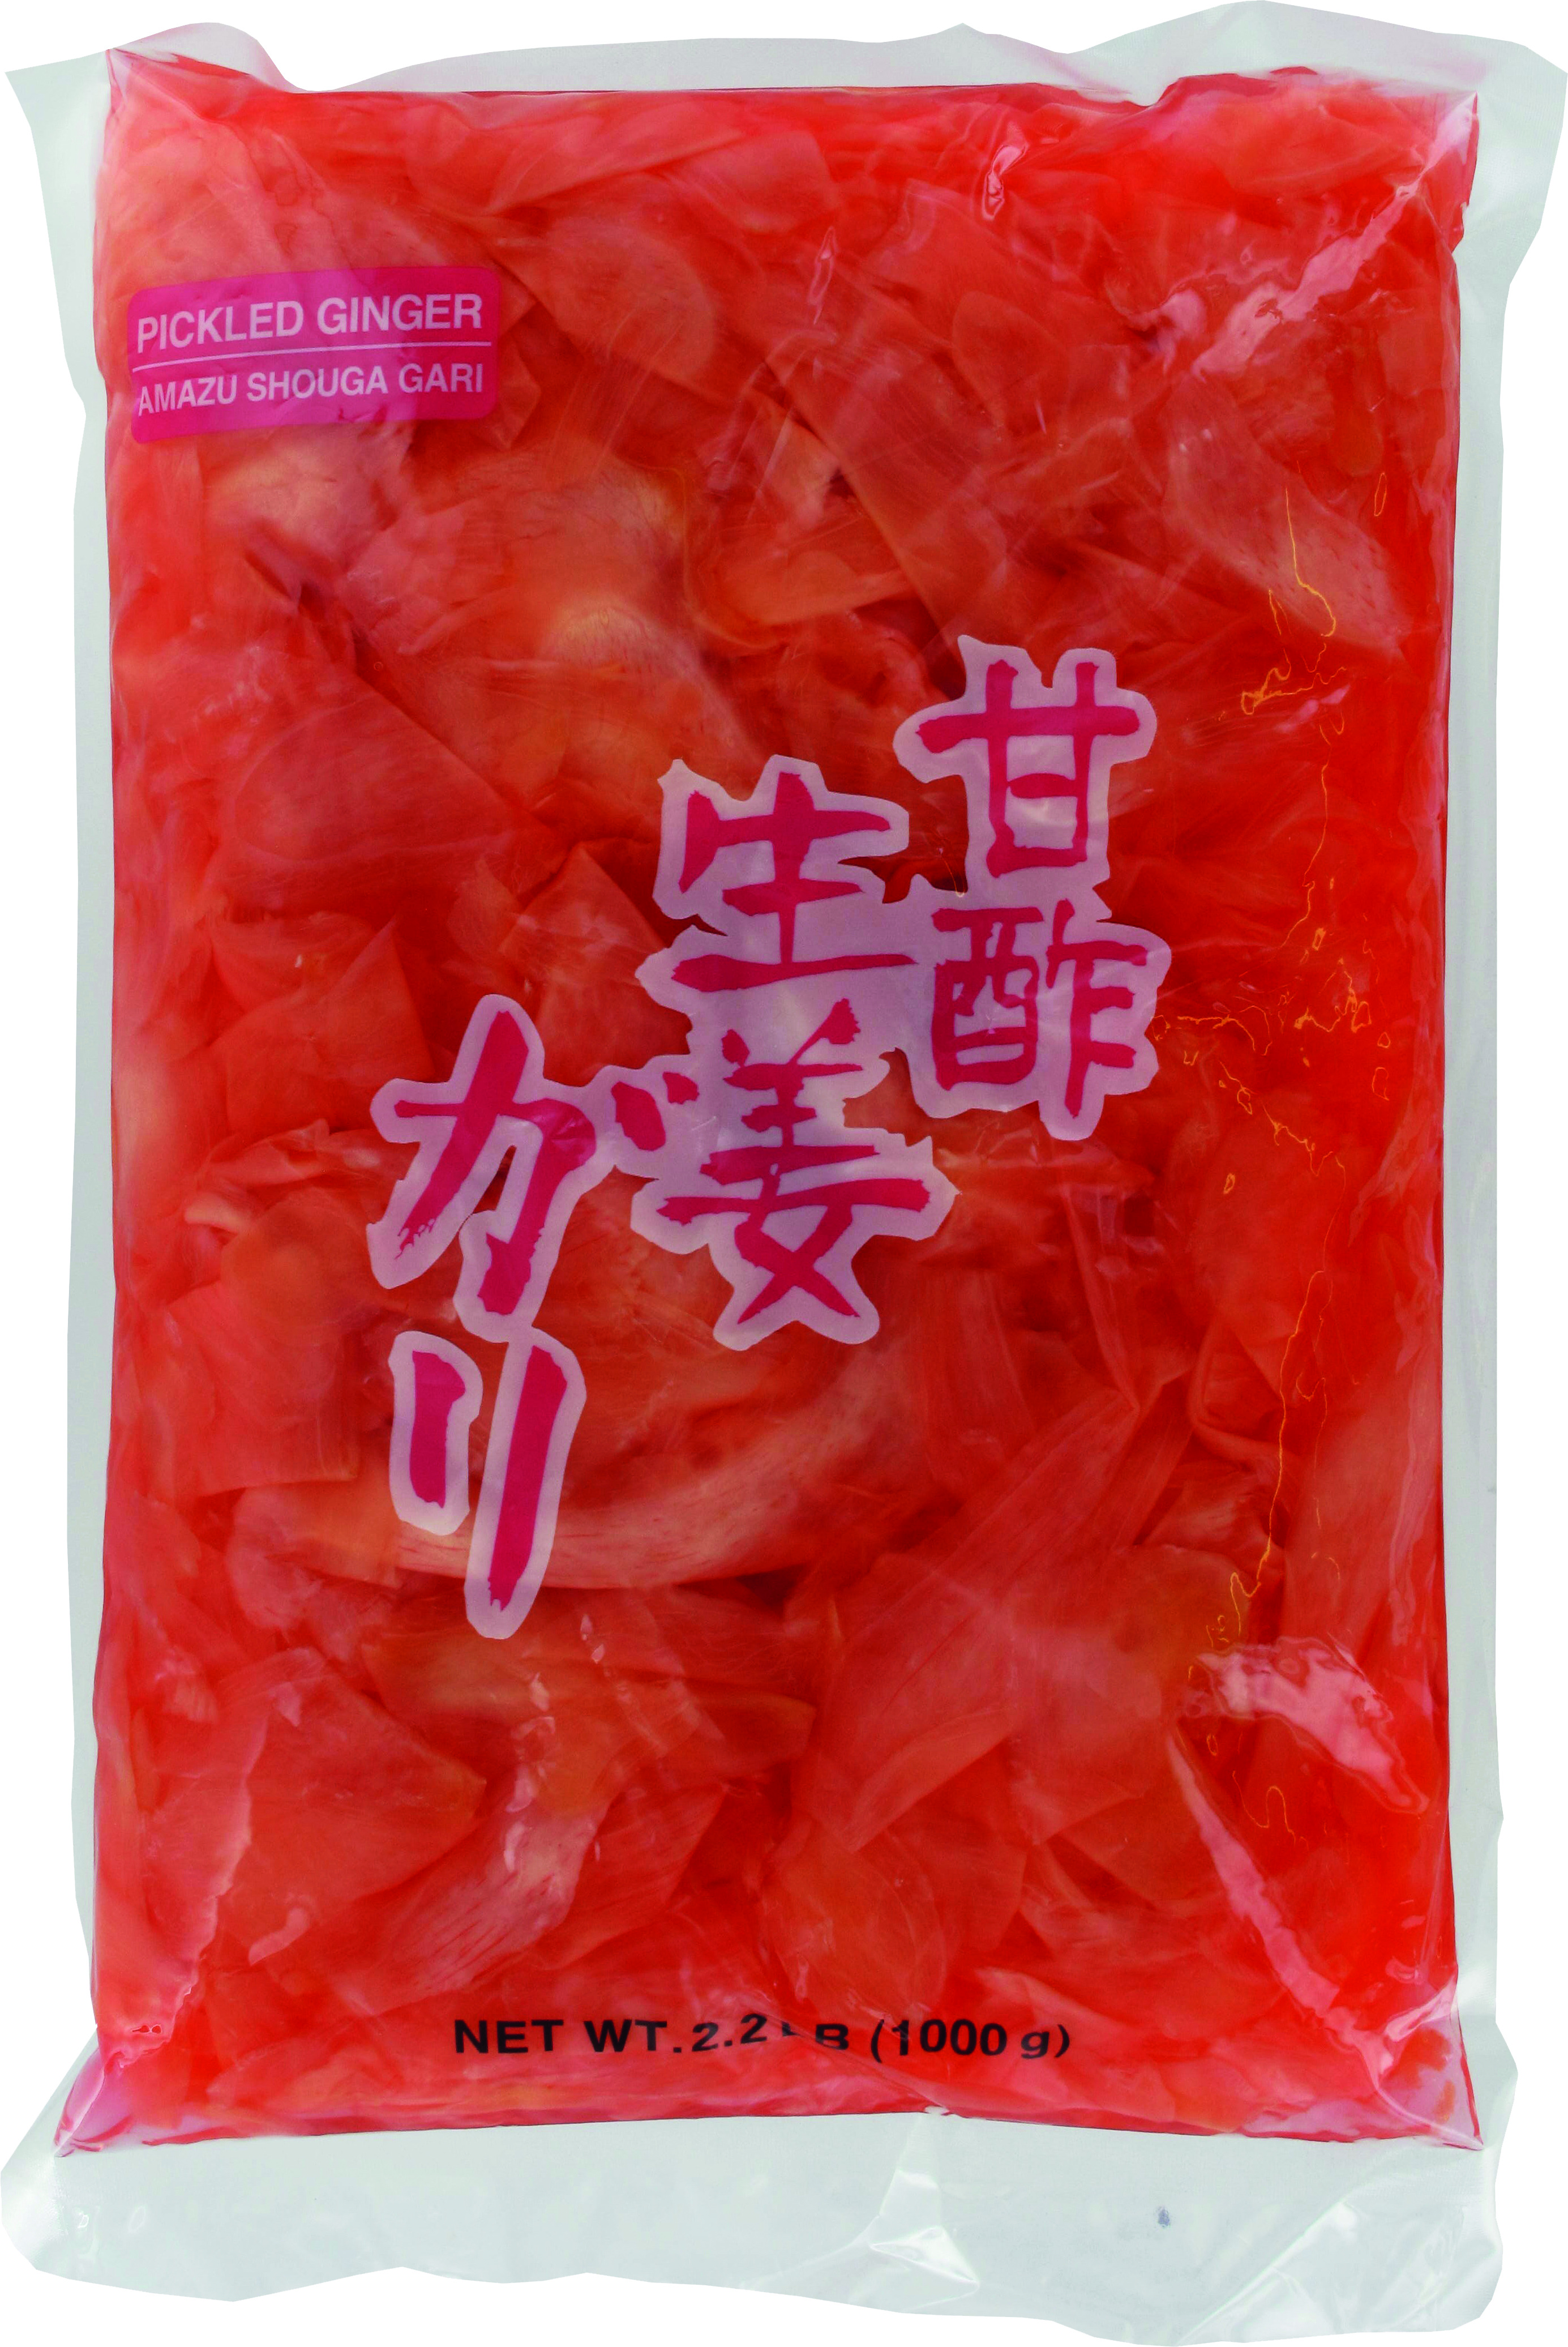 Gengibre Vermelho Fatiado 10 X 1,5 Kg - Lv Zheng Food